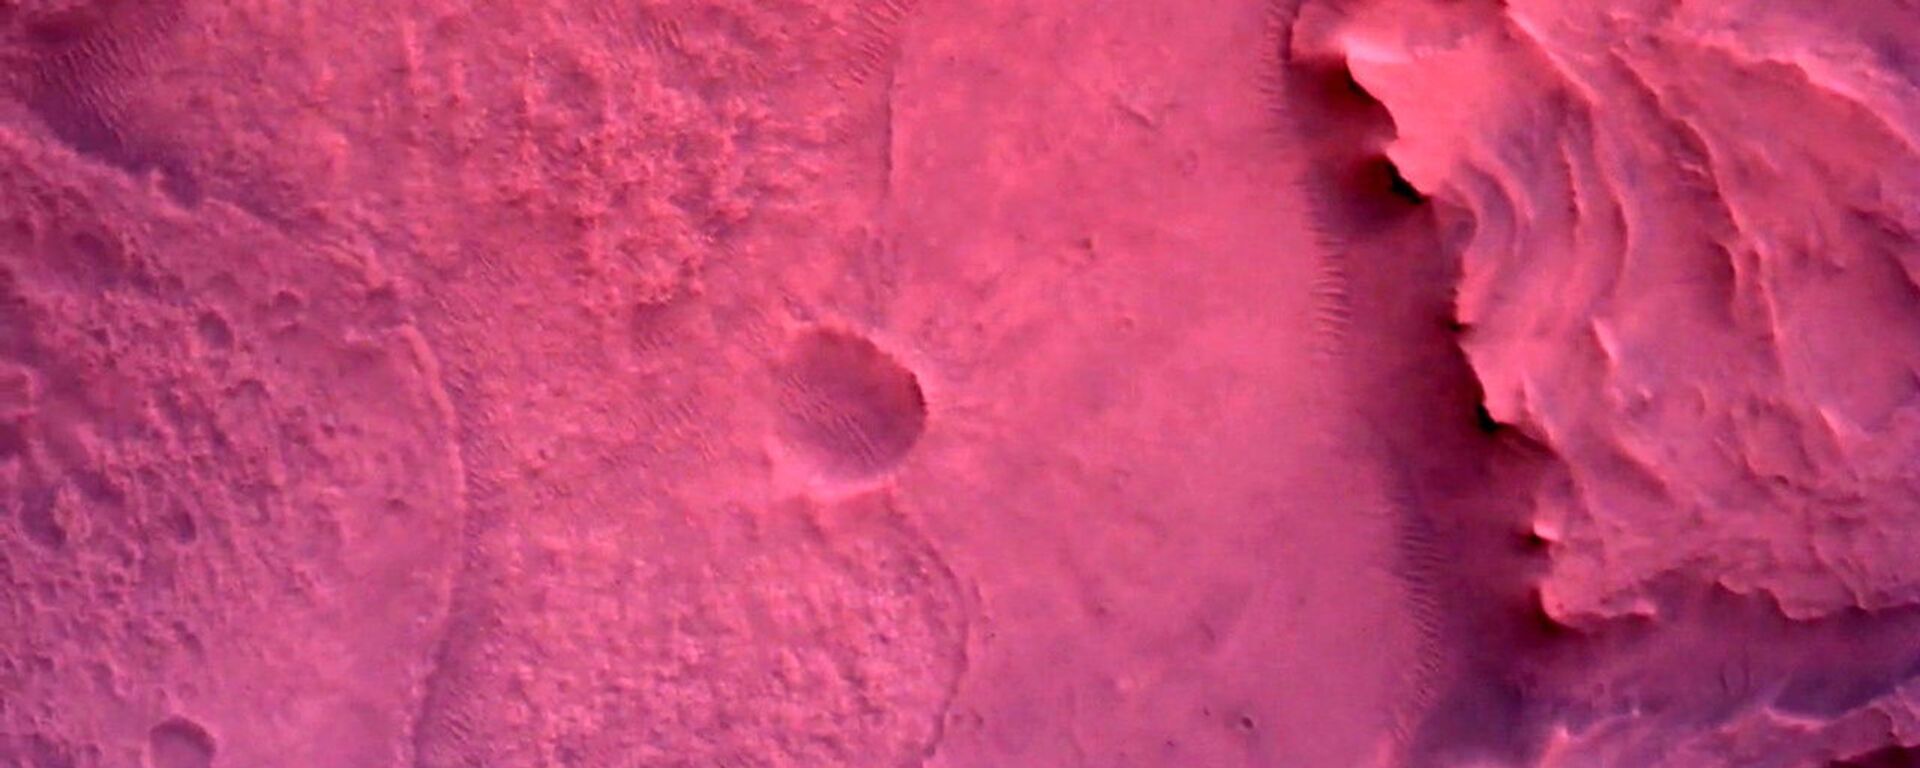 صورة لسطح كوكب المريخ مباشرة أسفل مركبة المركبة المتجولة بيرسيفرانس مارس التابعة لوكالة الفضاء الدولية ناسا، بواسطة كاميرا روفر داون-لوك في صورة تم الحصول عليها في 22 فبراير 2021 - سبوتنيك عربي, 1920, 24.02.2021